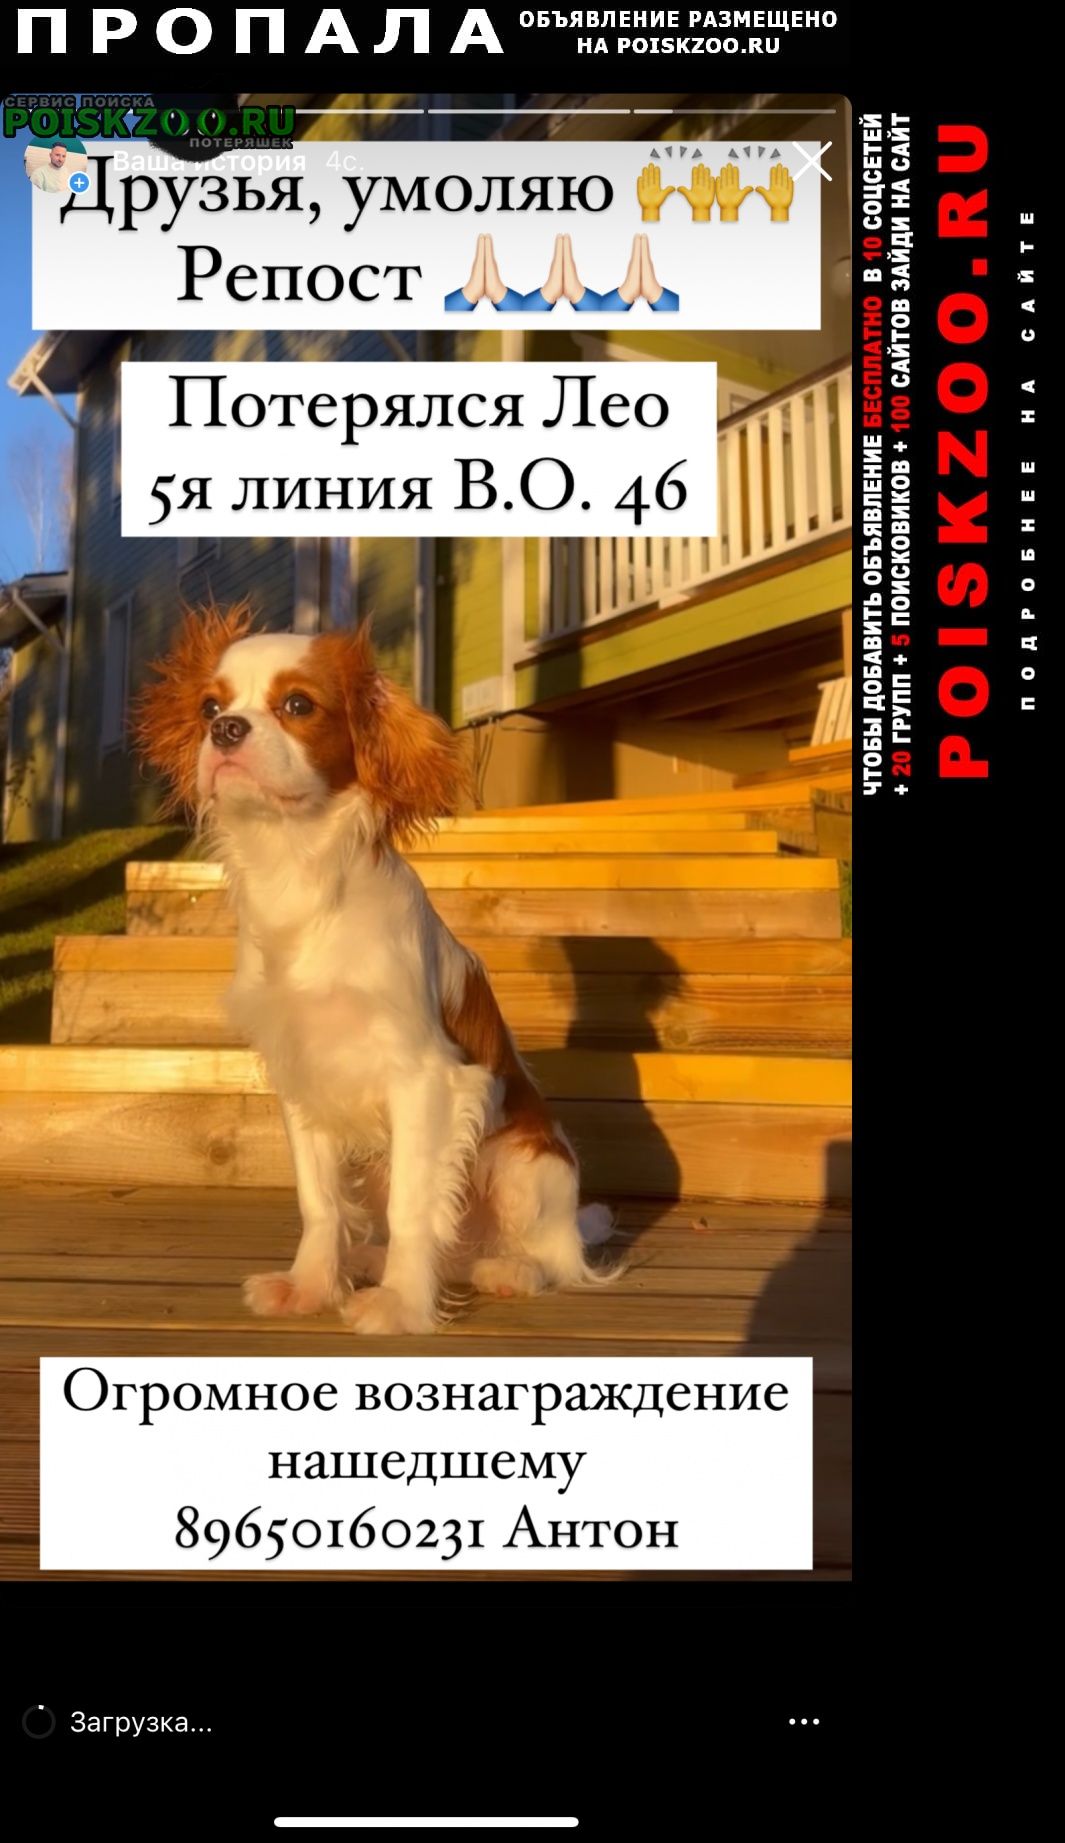 Пропала собака кобель щенок лео на м. василеостровская Санкт-Петербург